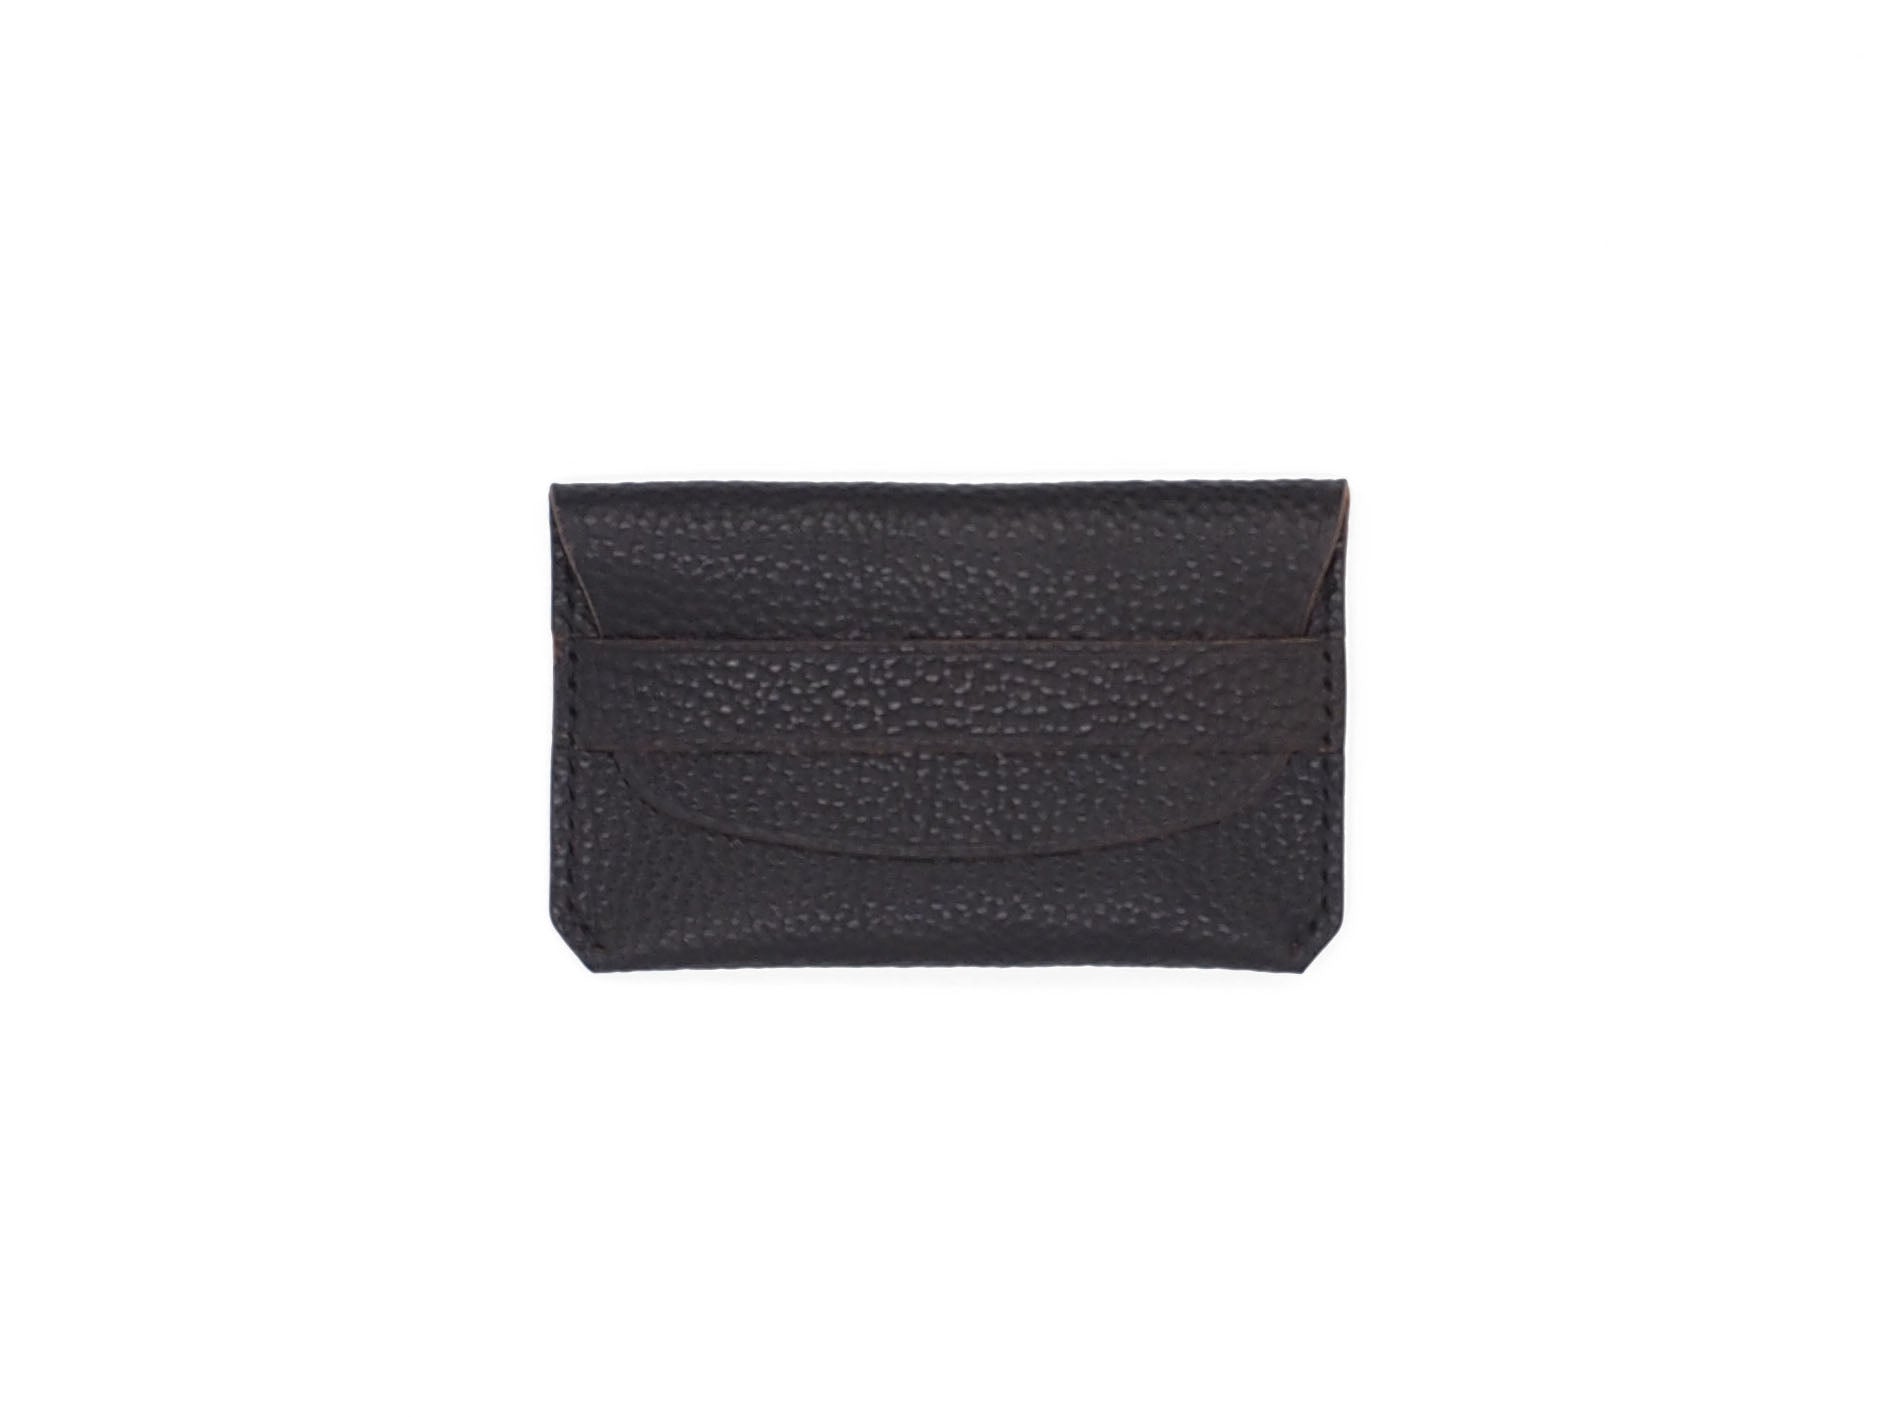 Bodega- Envelope Wallet In Pebbled Black